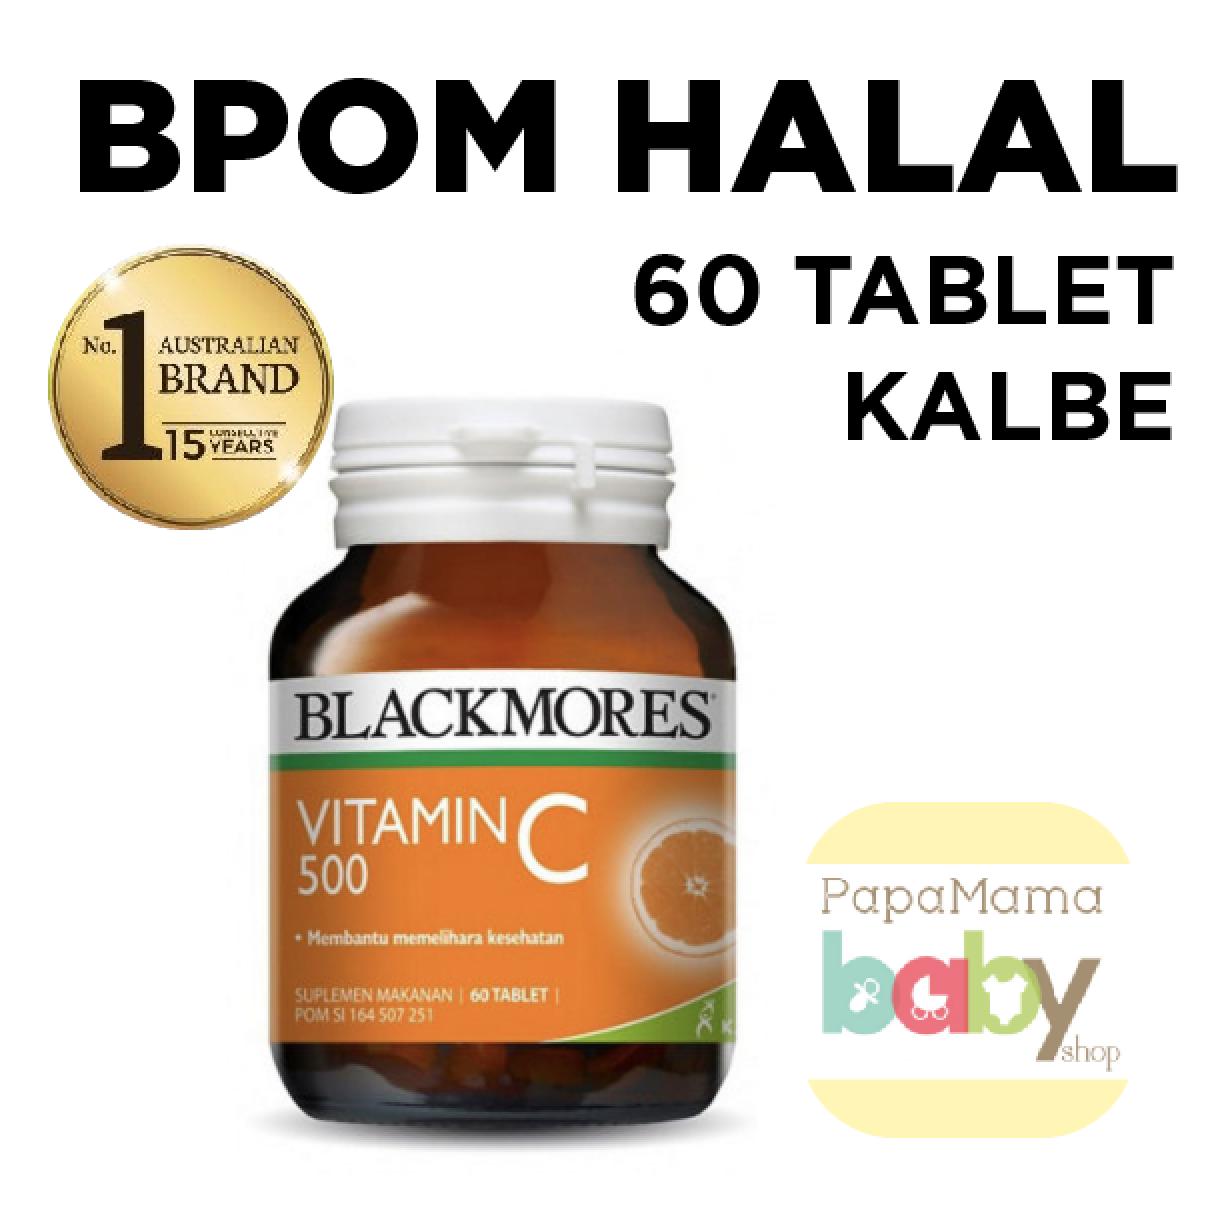 Blackmores Vitamin C Vit C 500 mg 500mg 60 Kapsul BPOM KALBE HALAL